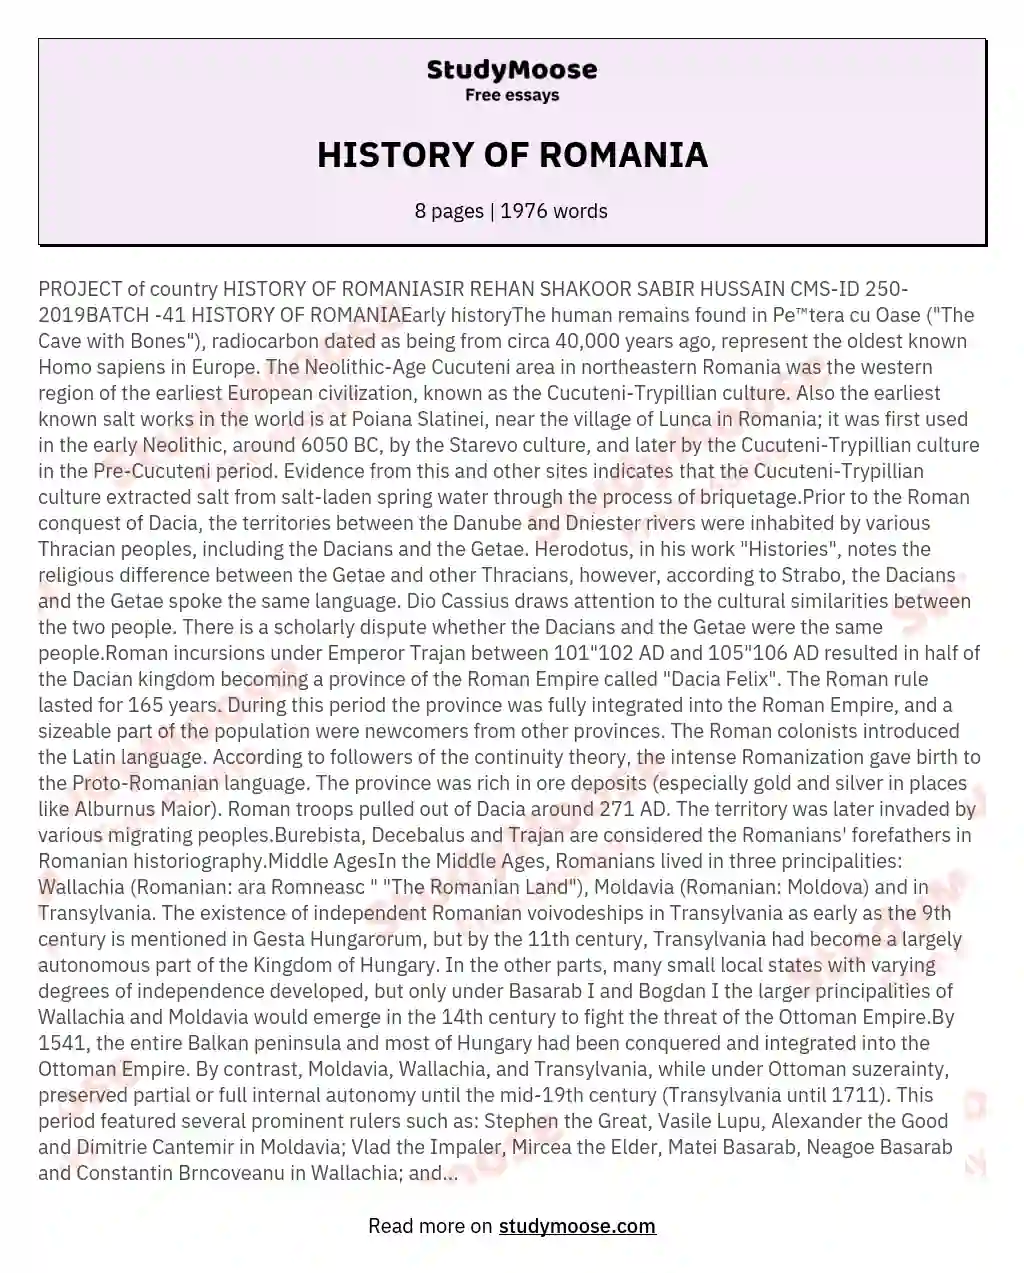 HISTORY OF ROMANIA essay